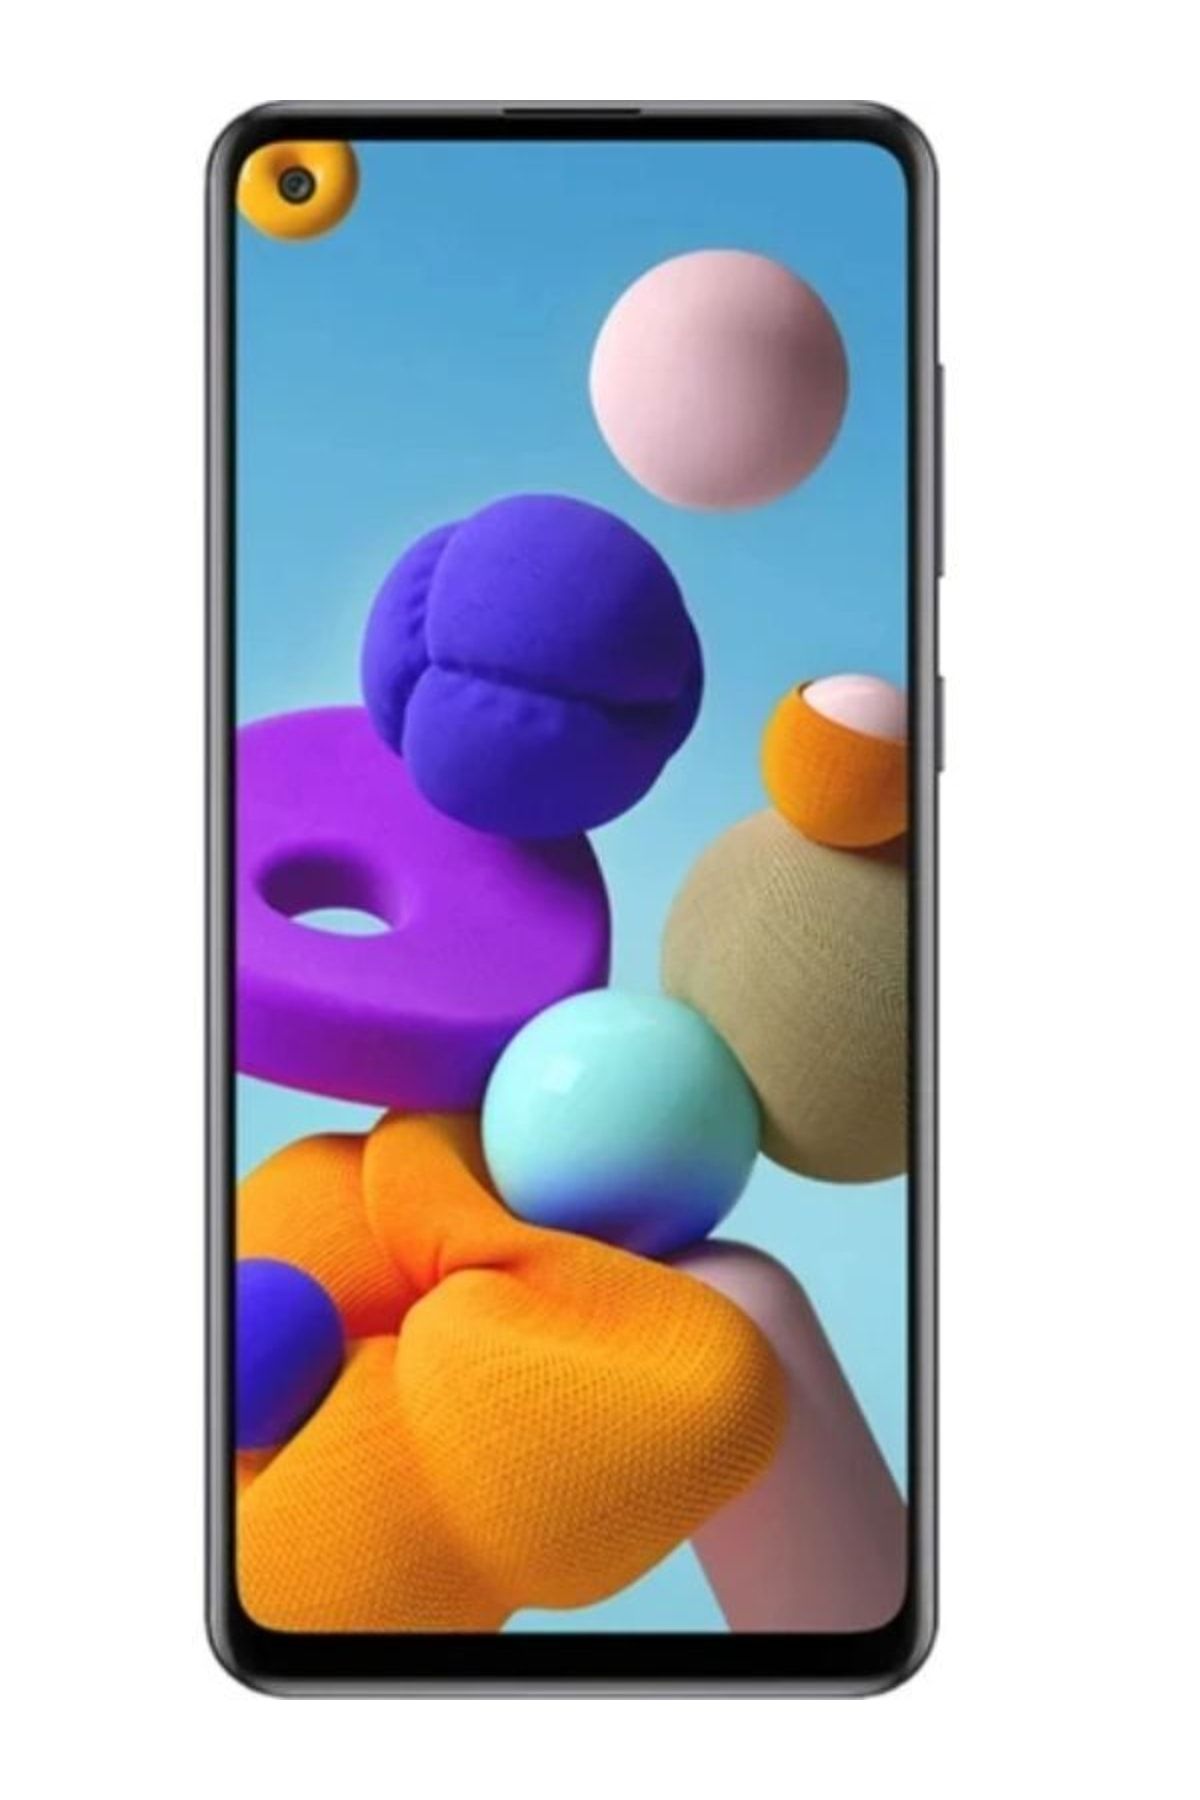 Samsung Yenilenmiş Galaxy A21s 64 GB (12 Ay Garantili)